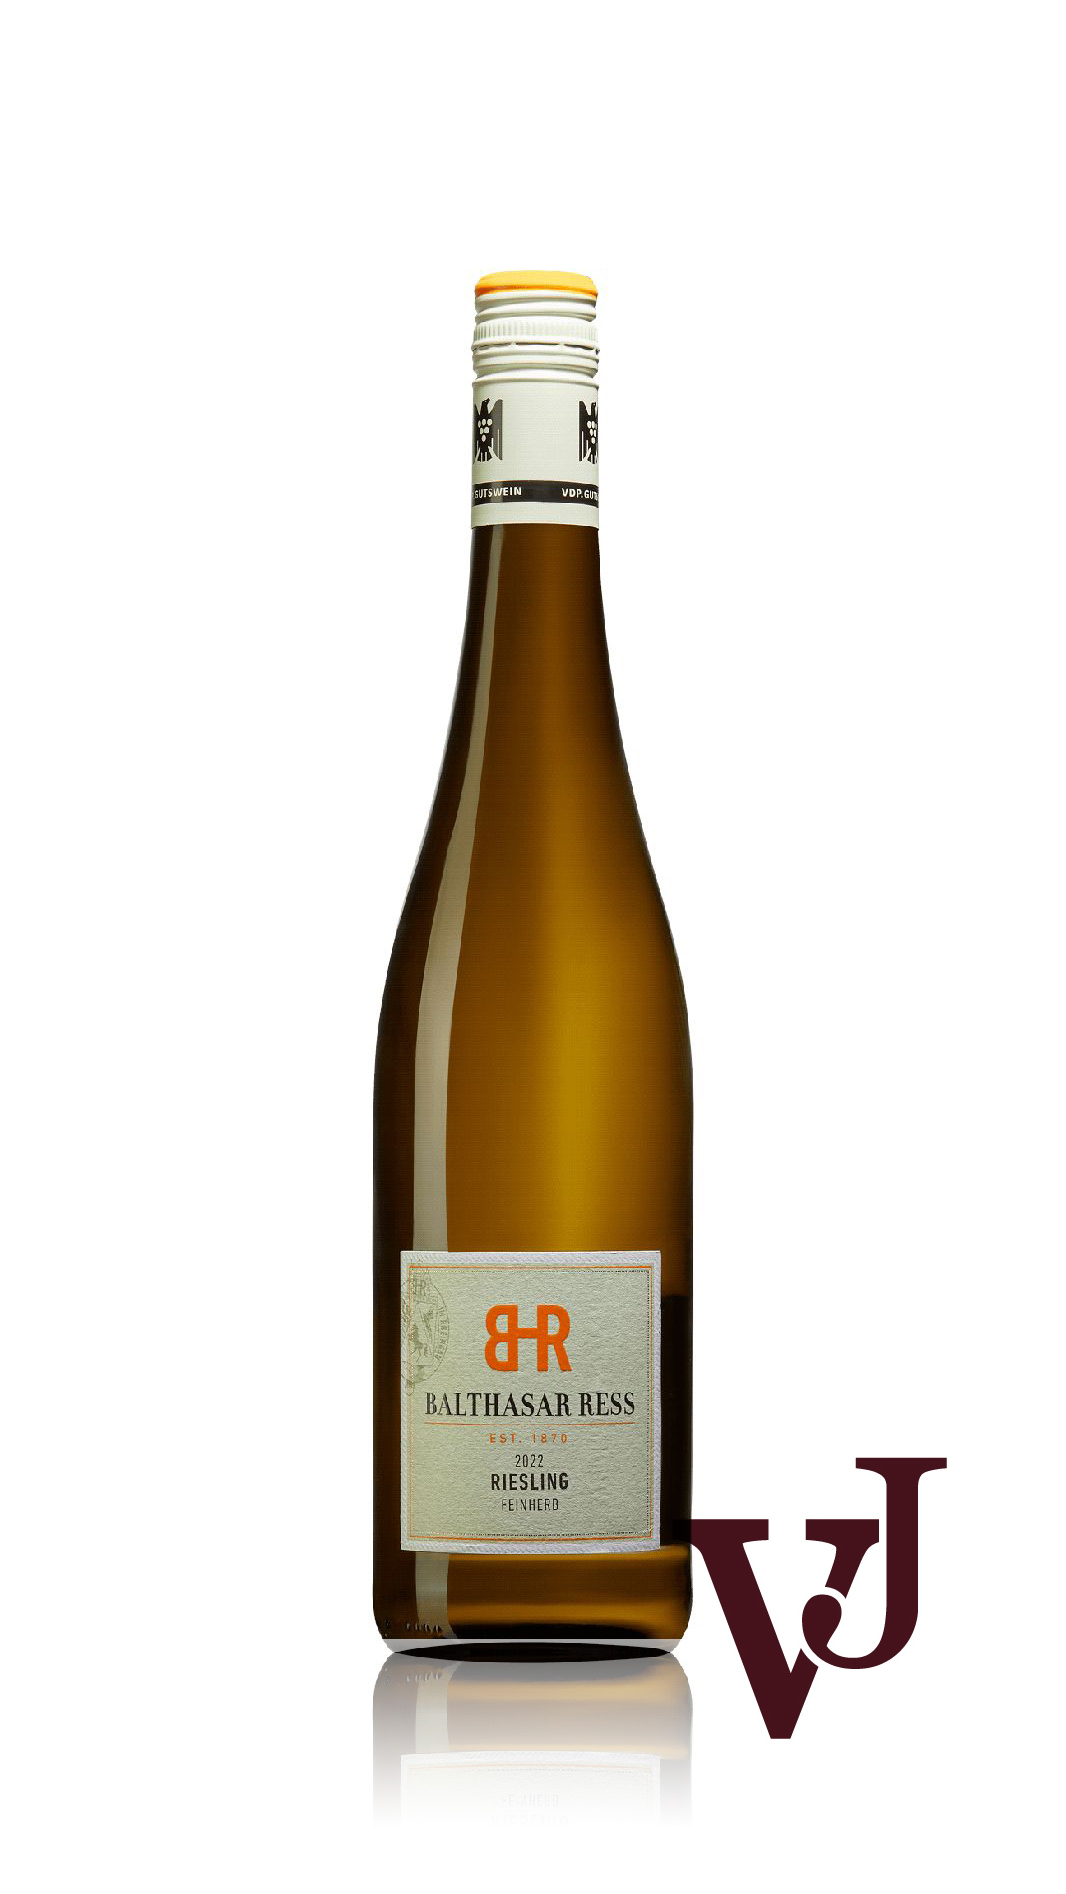 Vitt Vin - Balthasar Ress Rheingau Riesling feinherb 2022 artikel nummer 5568301 från producenten Weingut Balthasar Ress KG från området Tyskland